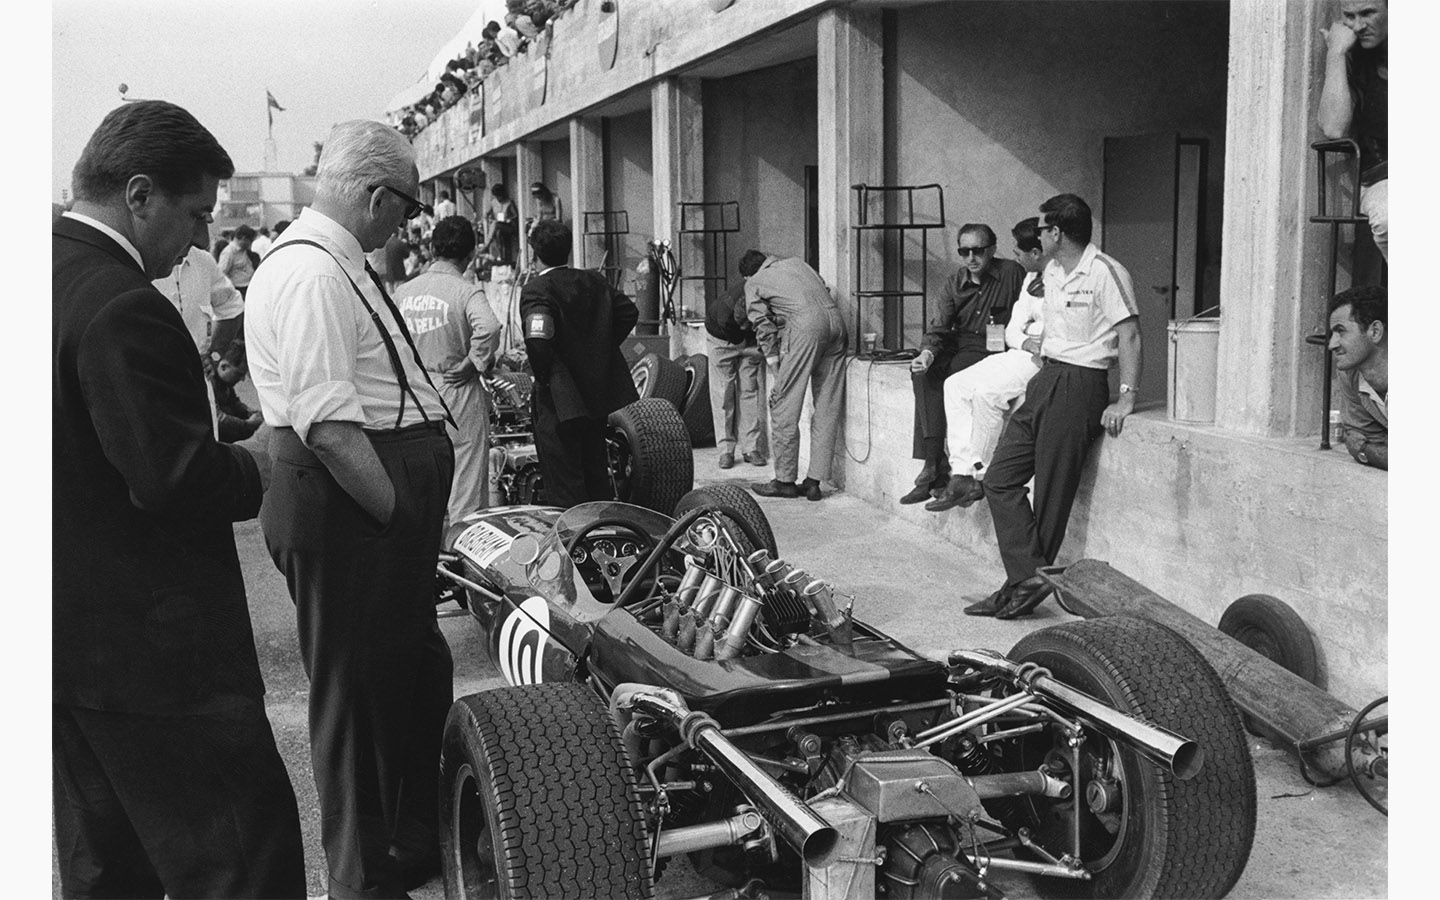 Итальянский автогонщик и бизнесмен Энцо Феррари смотрит на Brabham-Repco во время Гран-при Италии в Монце, 4 сентября 1966 года